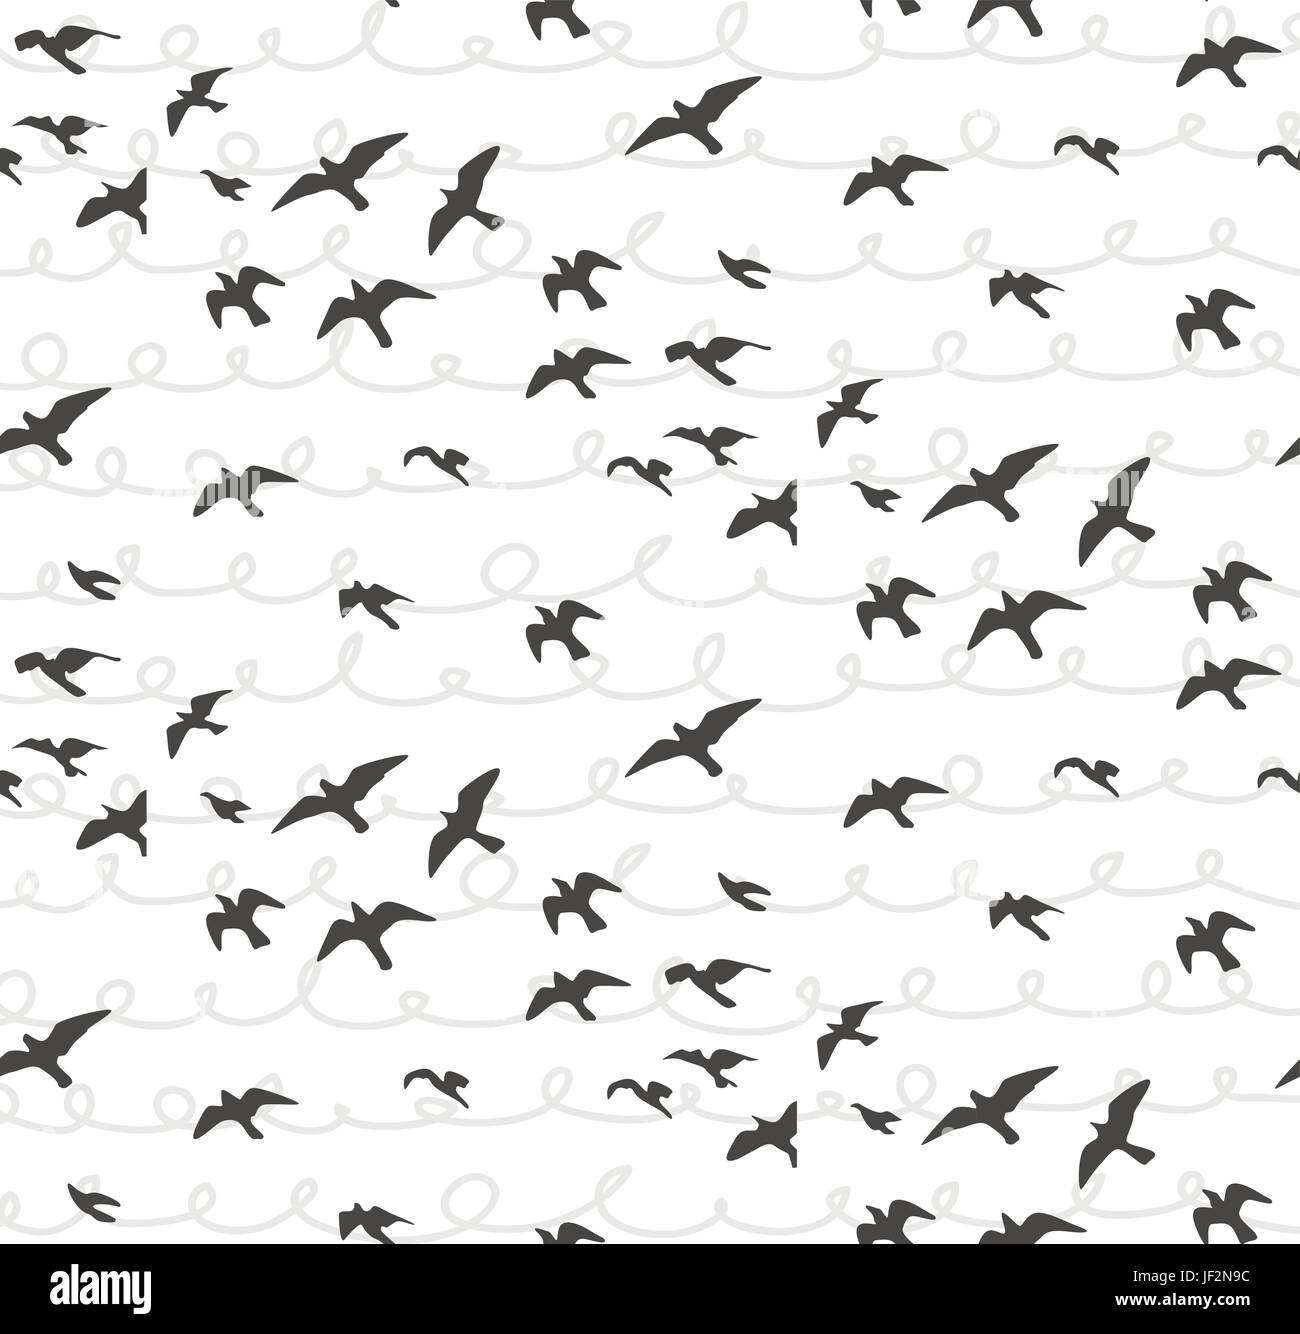 Möwen abstrakte Musterdesign. Fliegende Vögel Herde grauer Silhouette. Möwe Skizze abstrakte Vogel. Vektor niedlichen Design für Geschenkpapier, Stoff t Stock Vektor